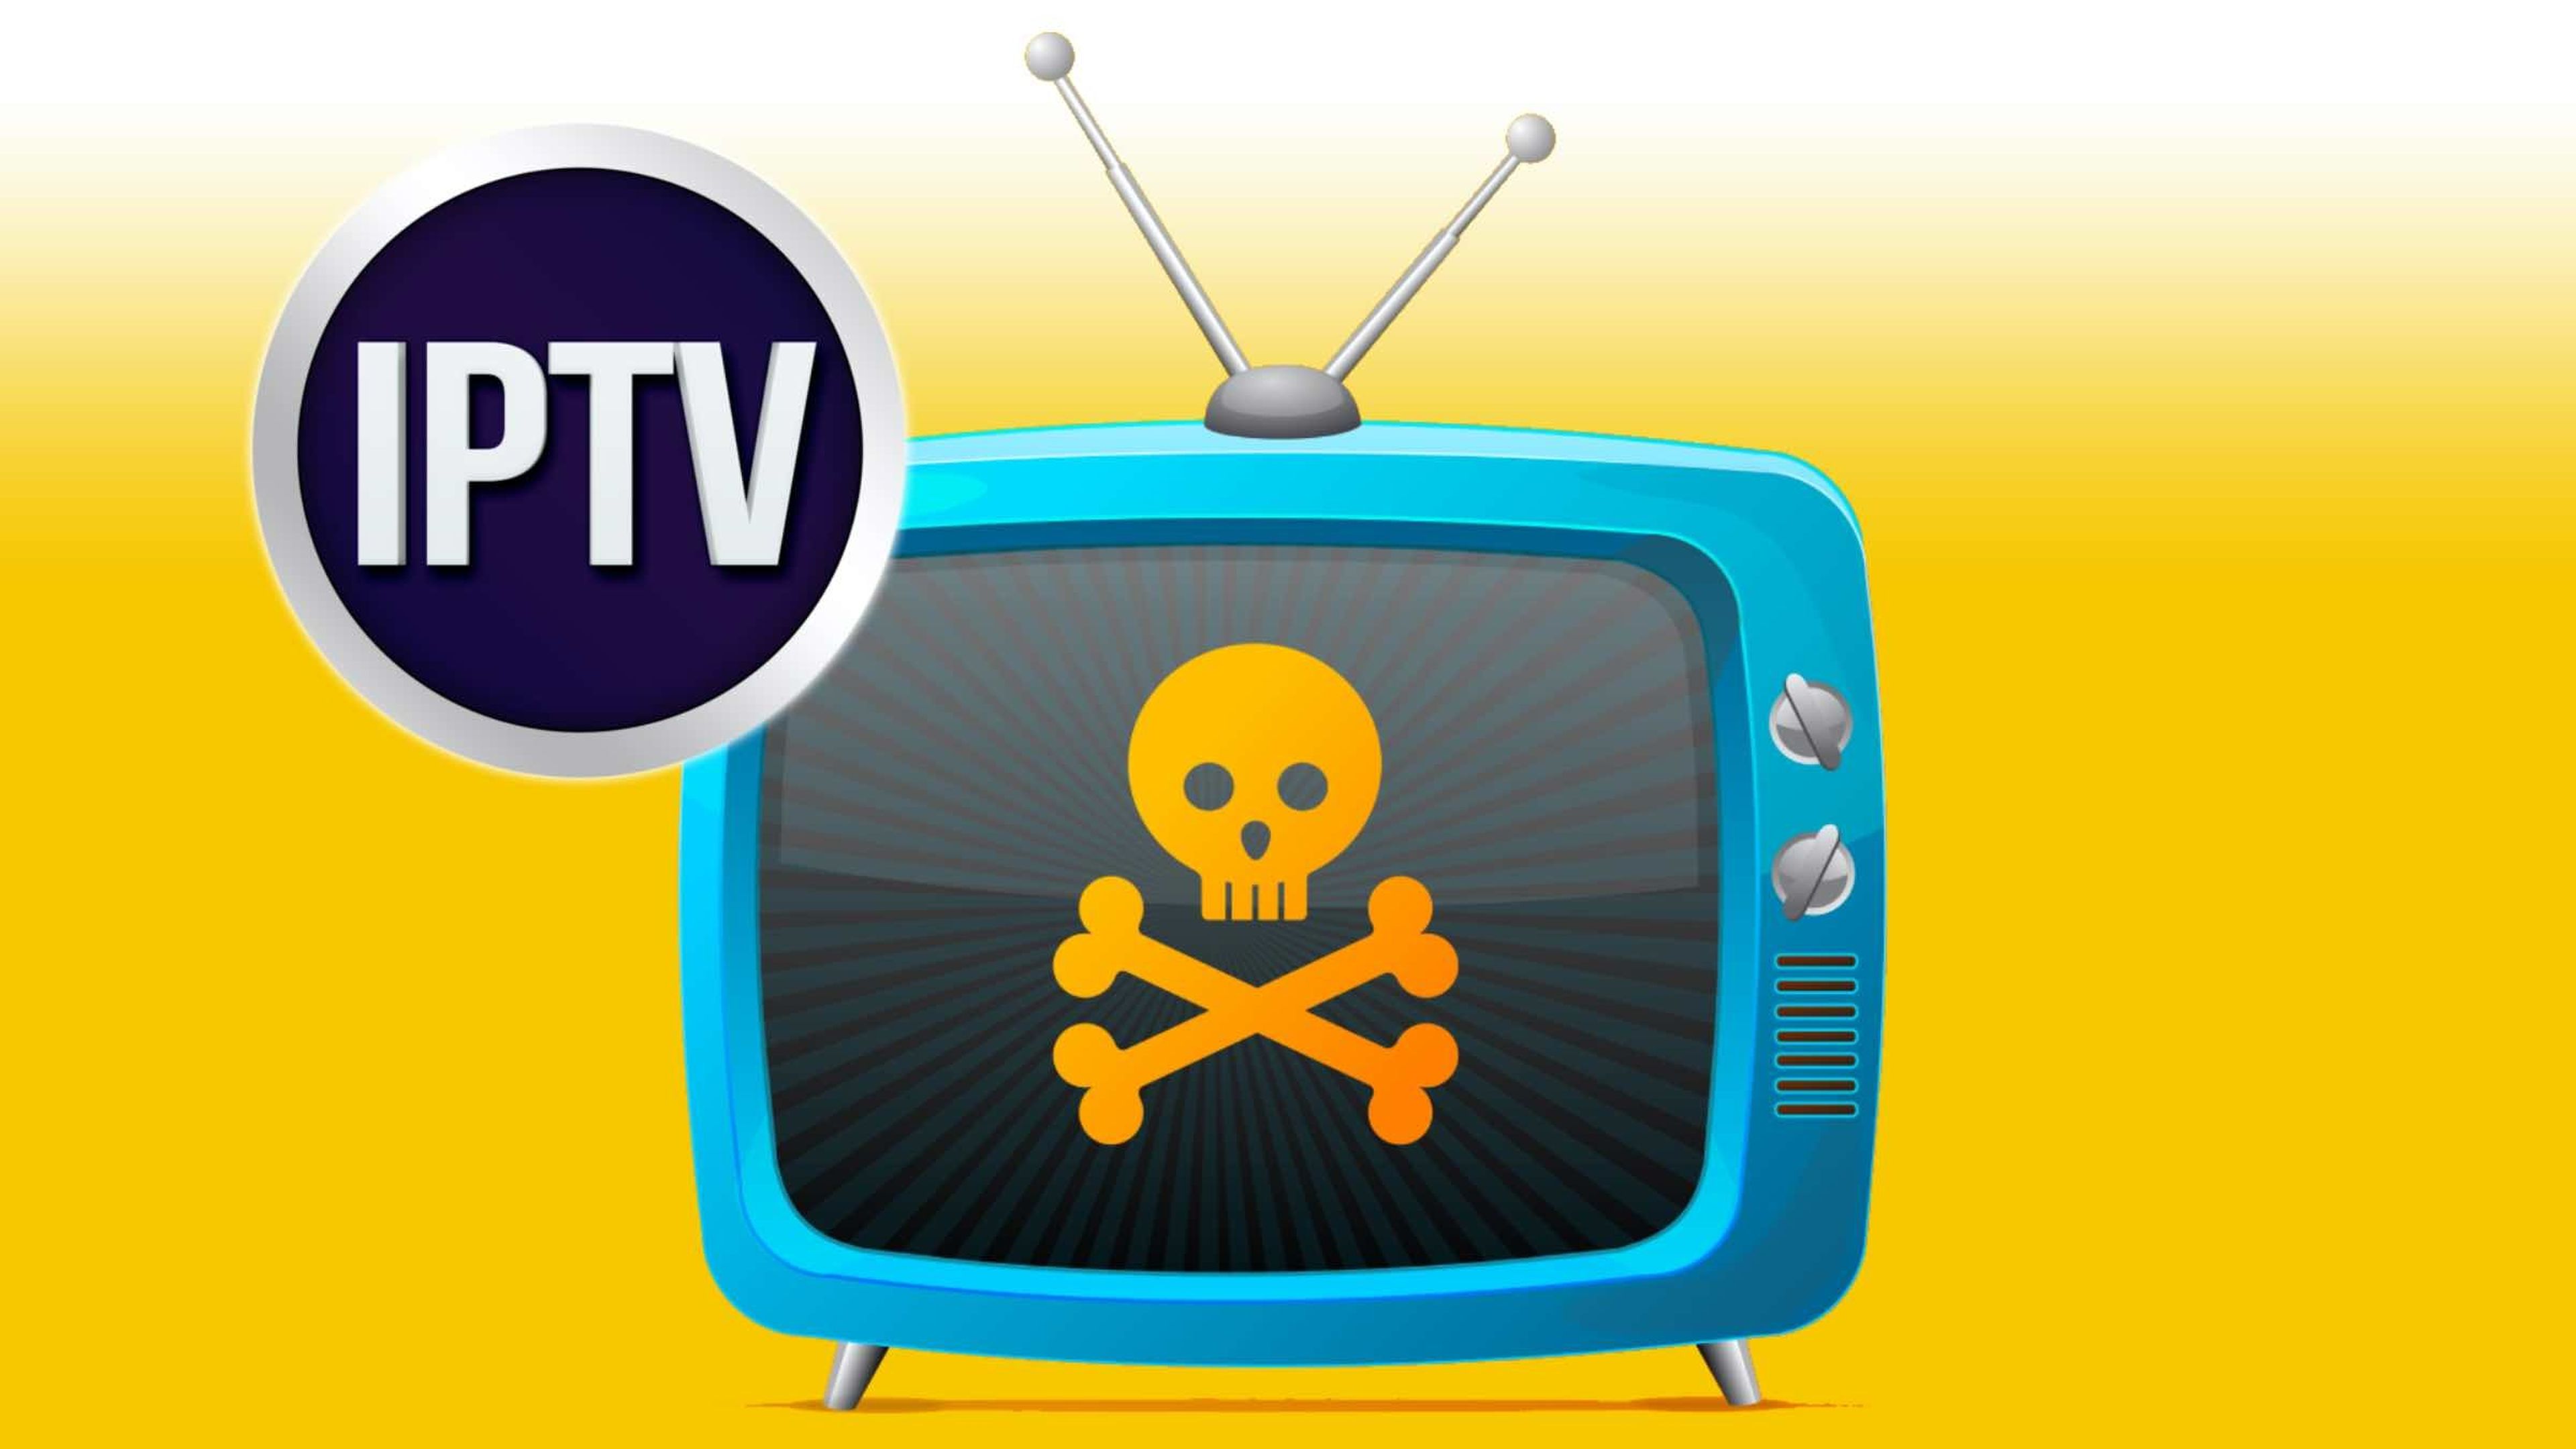 Adiós a las IPTV pirata con esta nueva alternativa gratis y legal